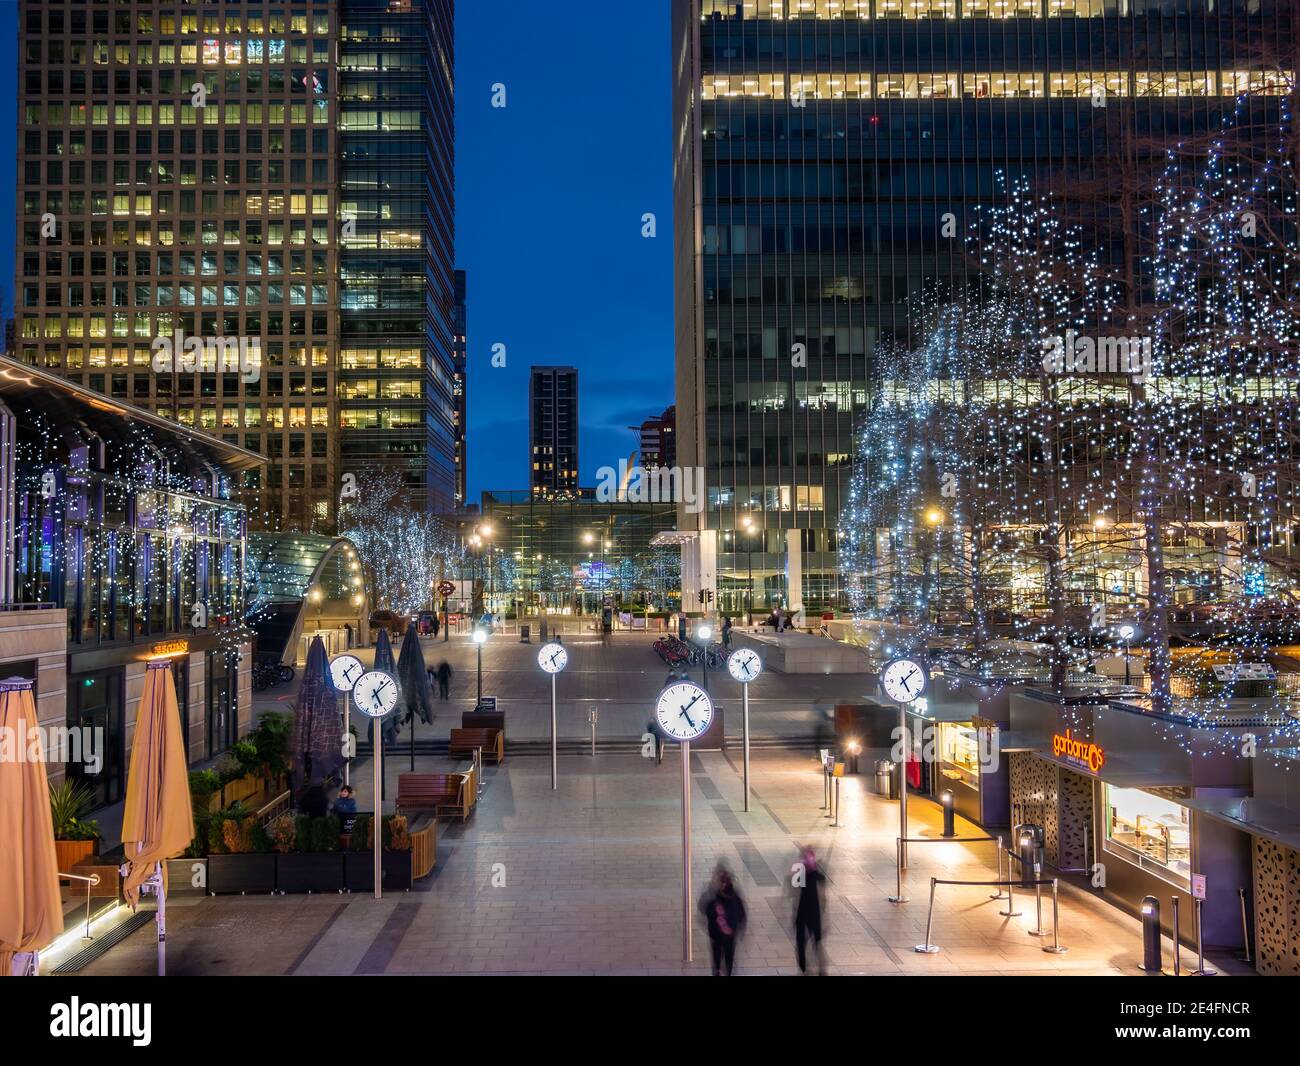 Londra, Inghilterra, Regno Unito - 23 gennaio 2021: Piazza del mercato della città illuminata dalla decorazione delle luci durante le vacanze di Natale di notte, nella zona di Canary Wharf Foto Stock